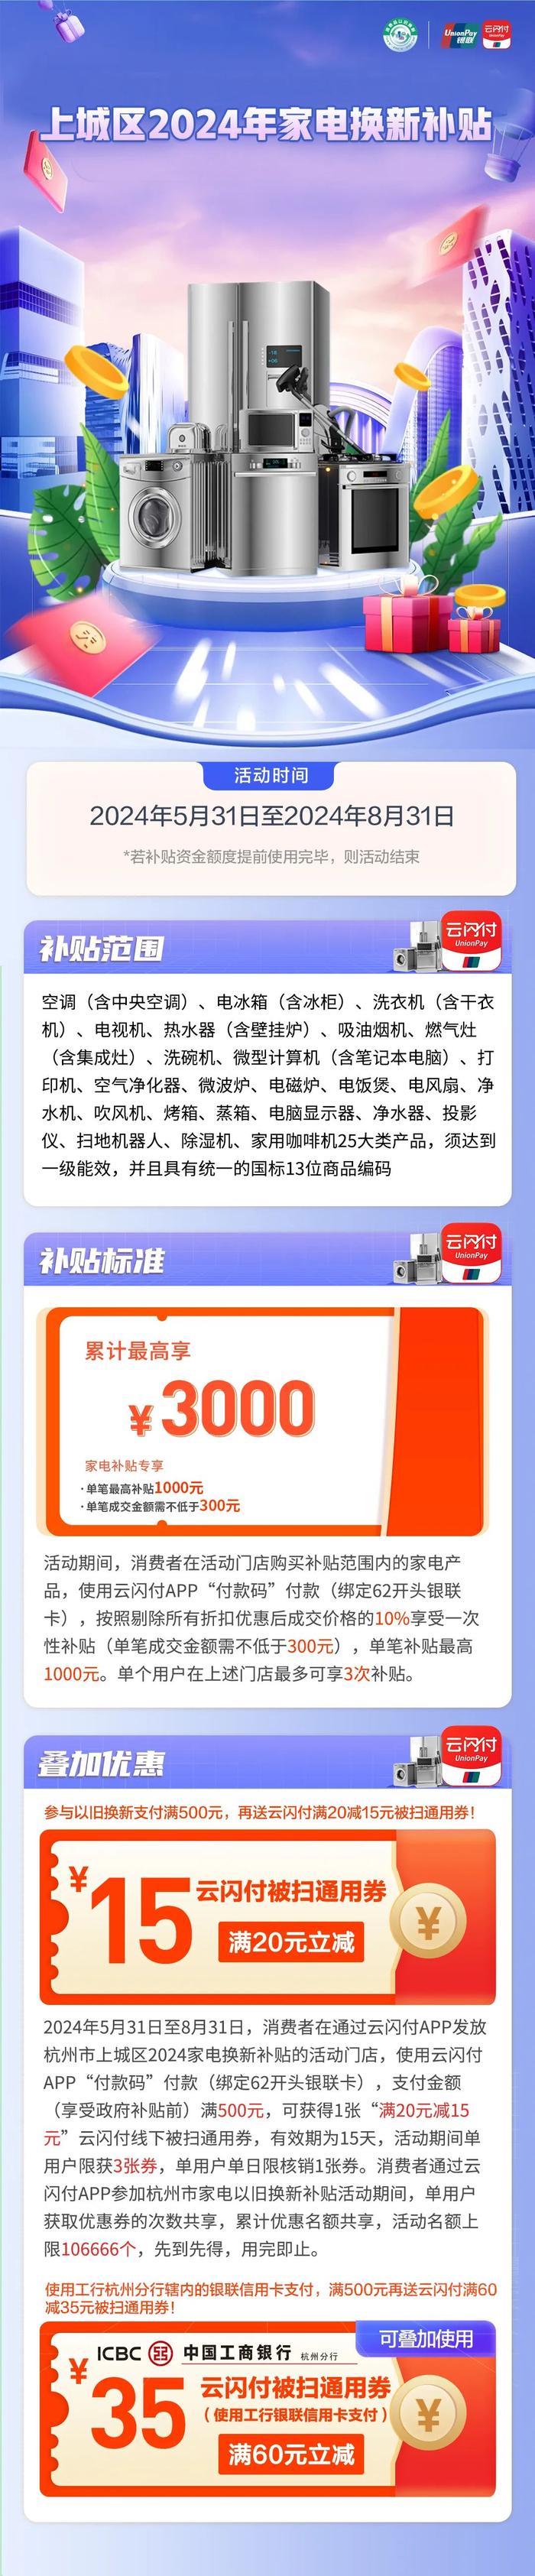 超5000万元！杭州三城区发放各类消费补贴